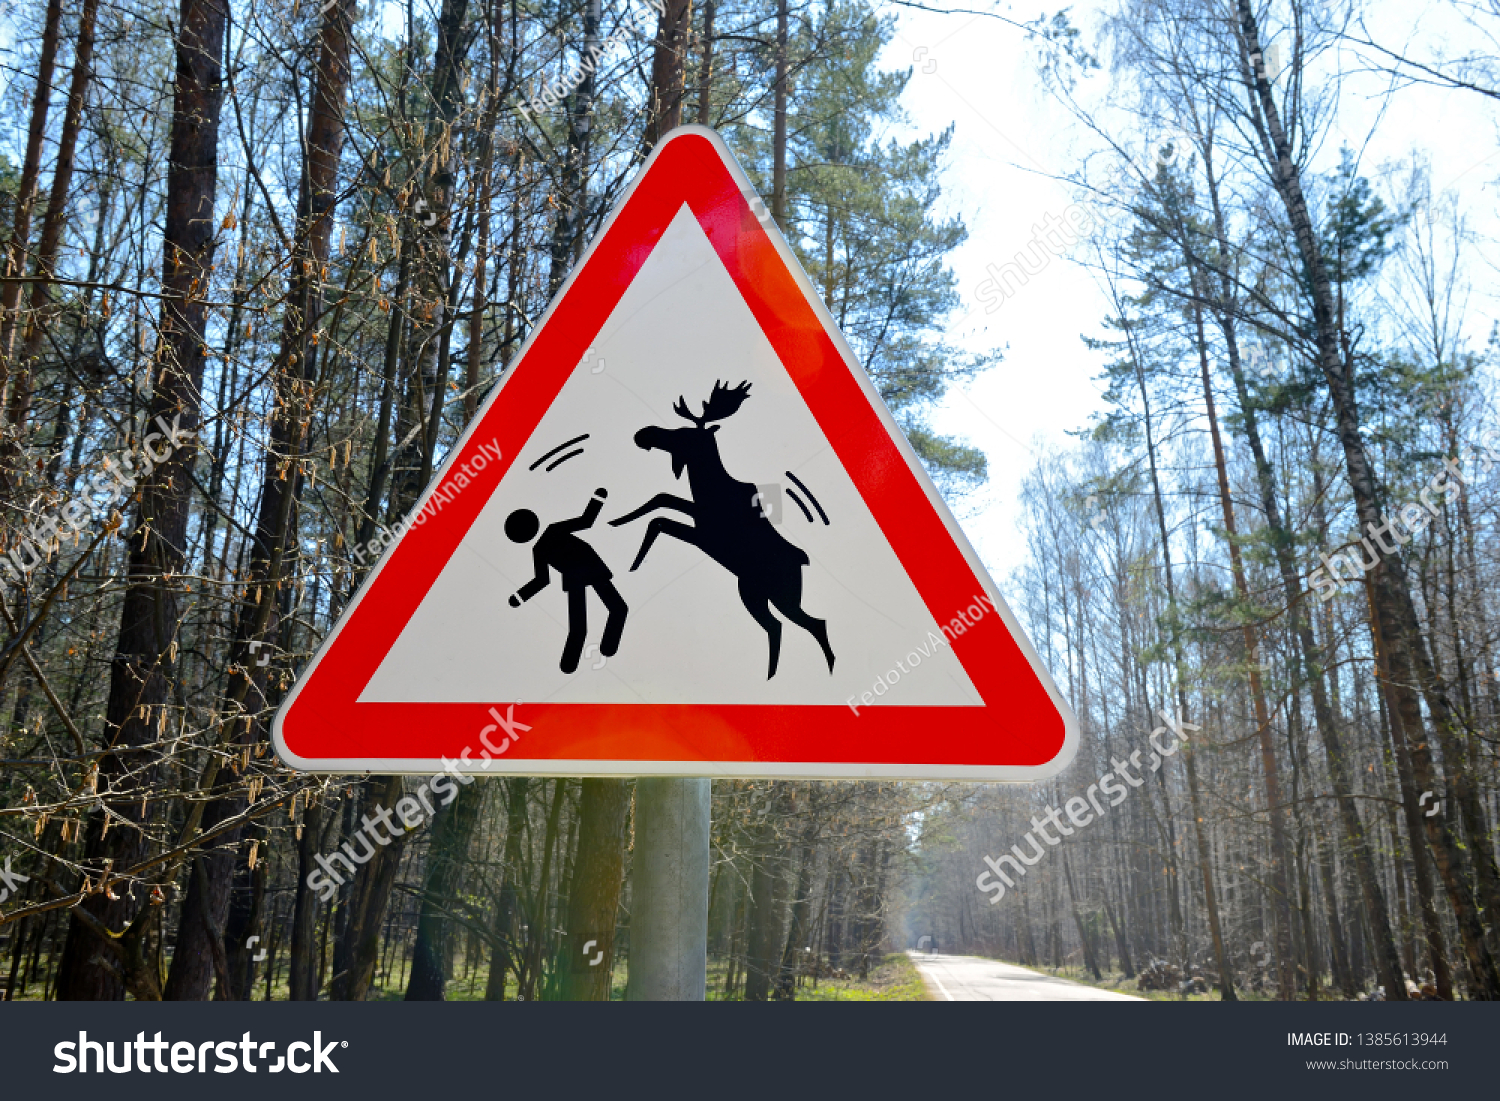 Beware of Attack Moose sign 